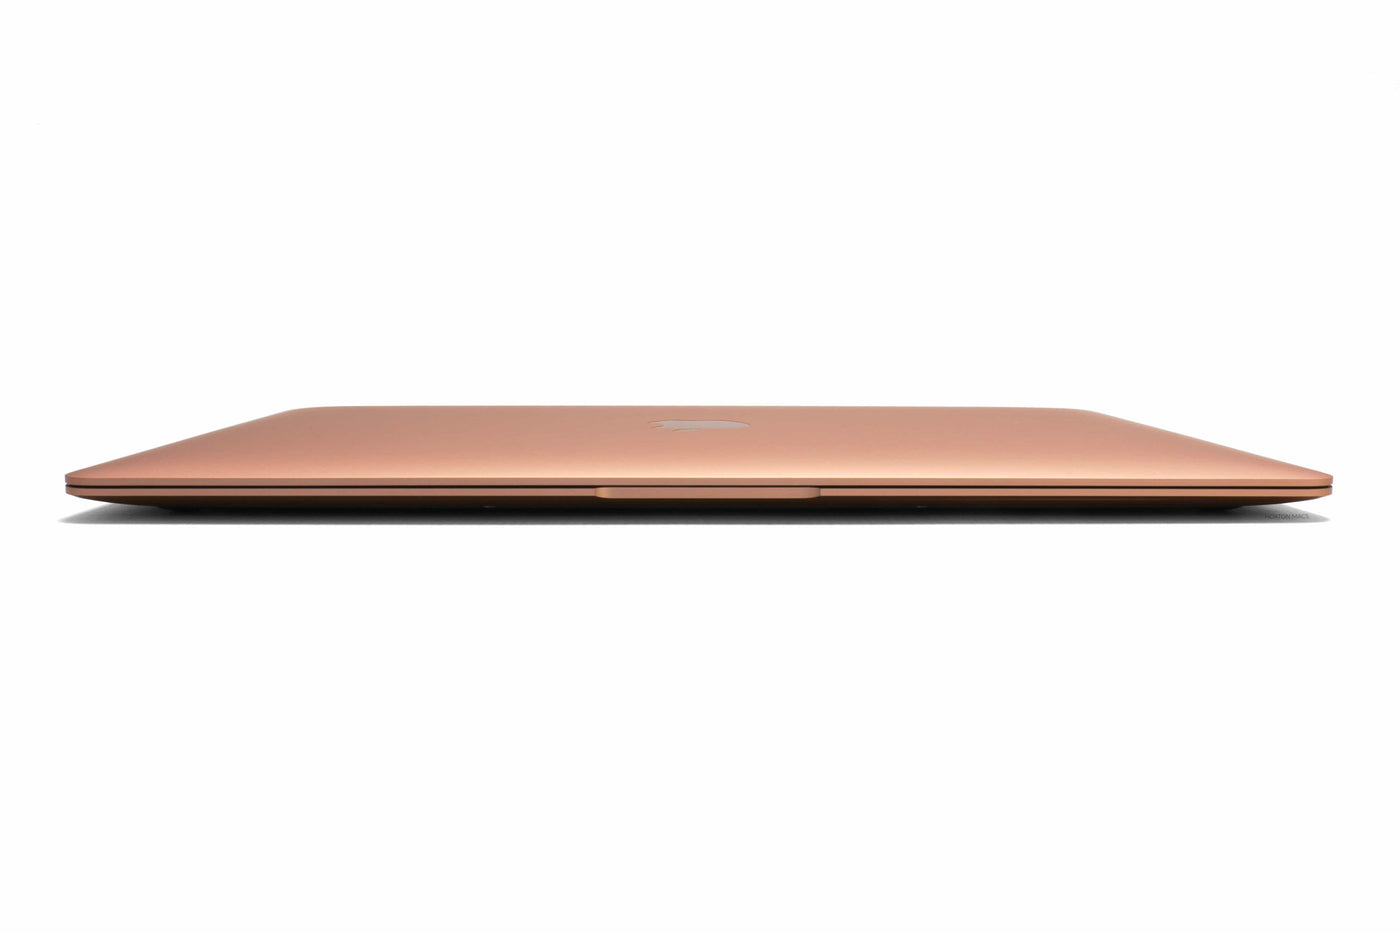 Apple MacBook Air 13-inch MacBook Air 13-inch Core i7 1.2GHz (Gold, 2020) - Fair